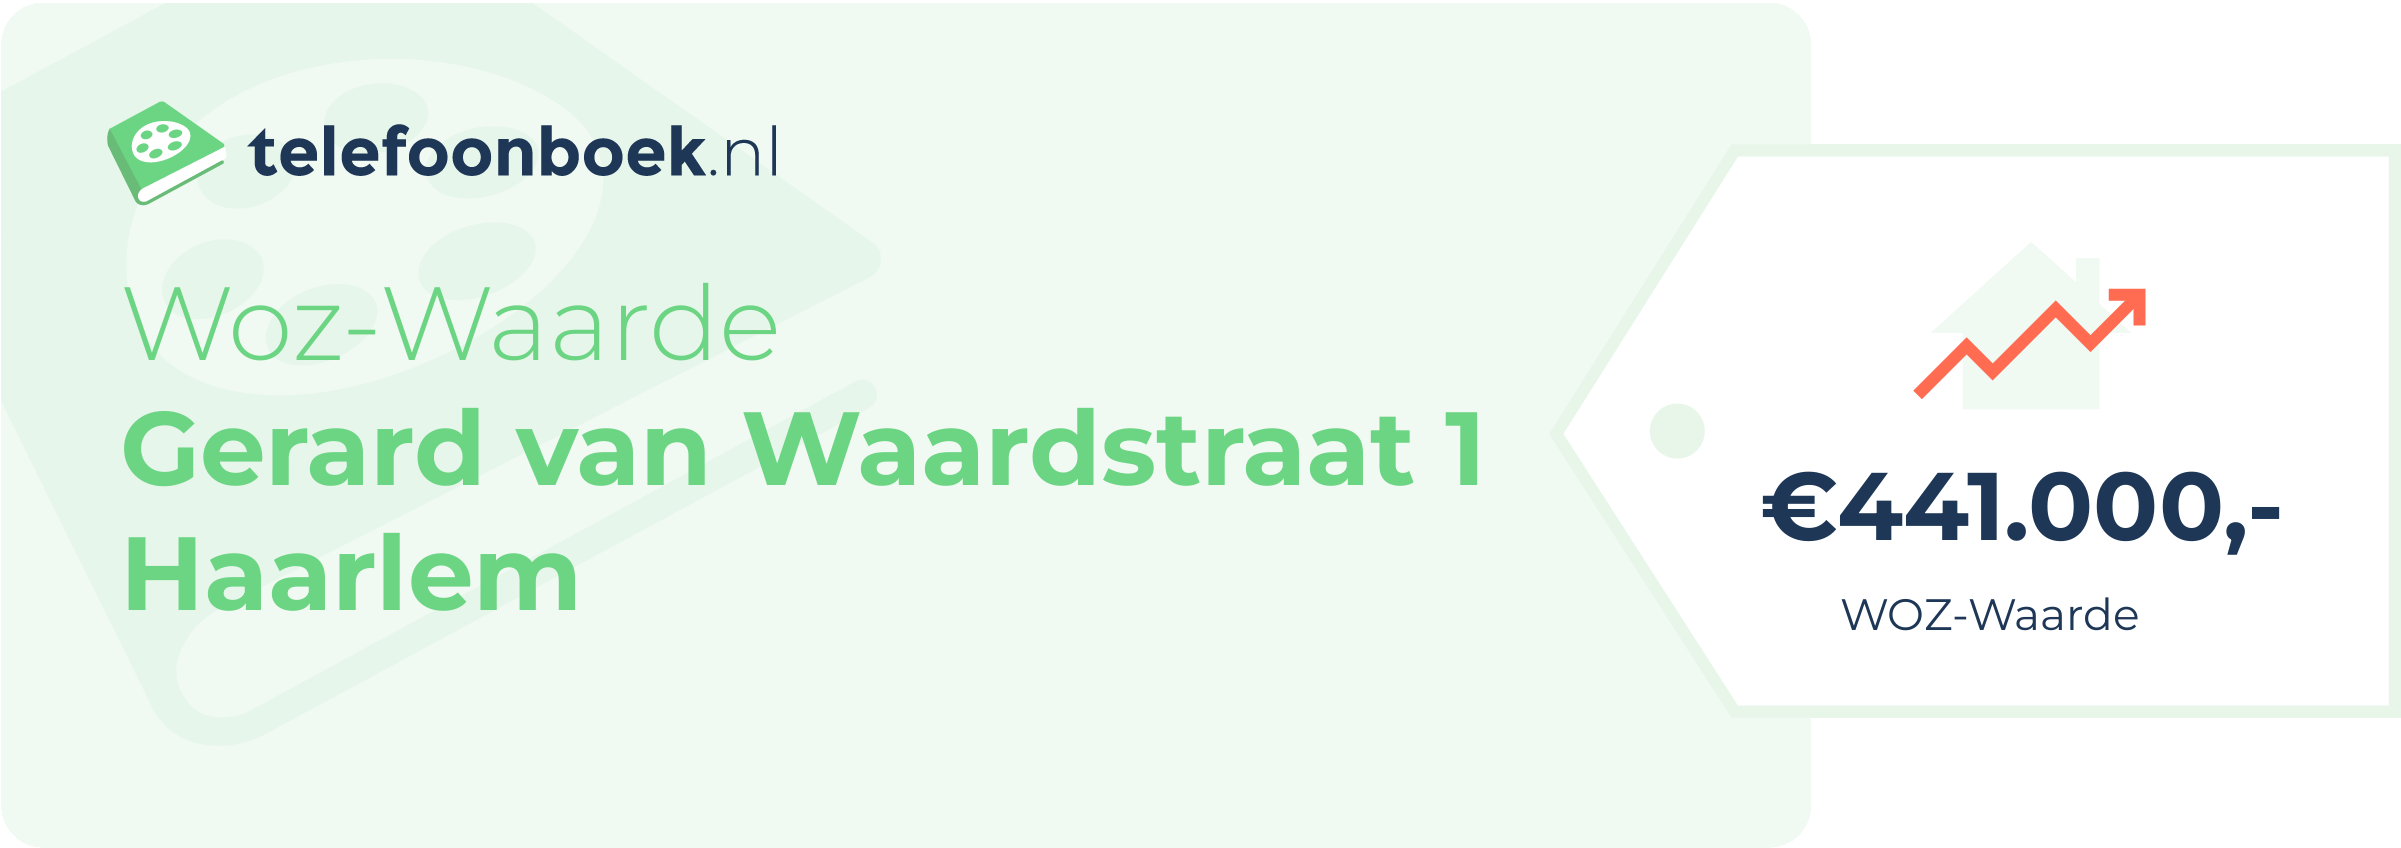 WOZ-waarde Gerard Van Waardstraat 1 Haarlem